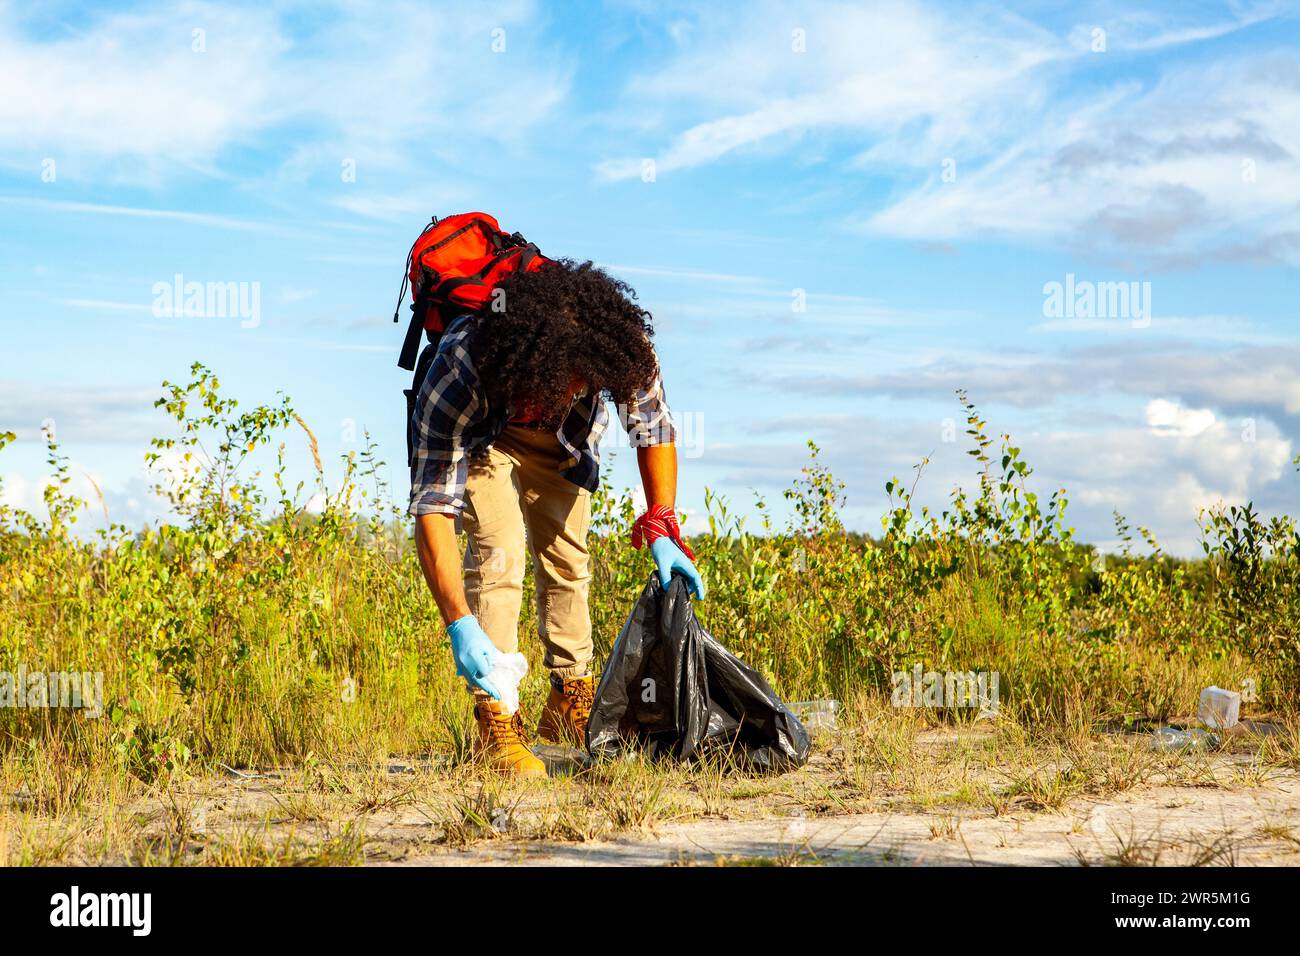 Eine Person mit lockigen Haaren, die Handschuhe trägt, sammelt Müll in einer schwarzen Tasche in einer natürlichen Umgebung und trägt so zum Umweltschutz unter einem klaren blauen Himmel bei. Freiwilliger Reinigungsstreu auf einem Feld an einem sonnigen Tag. Hochwertige Fotos Stockfoto